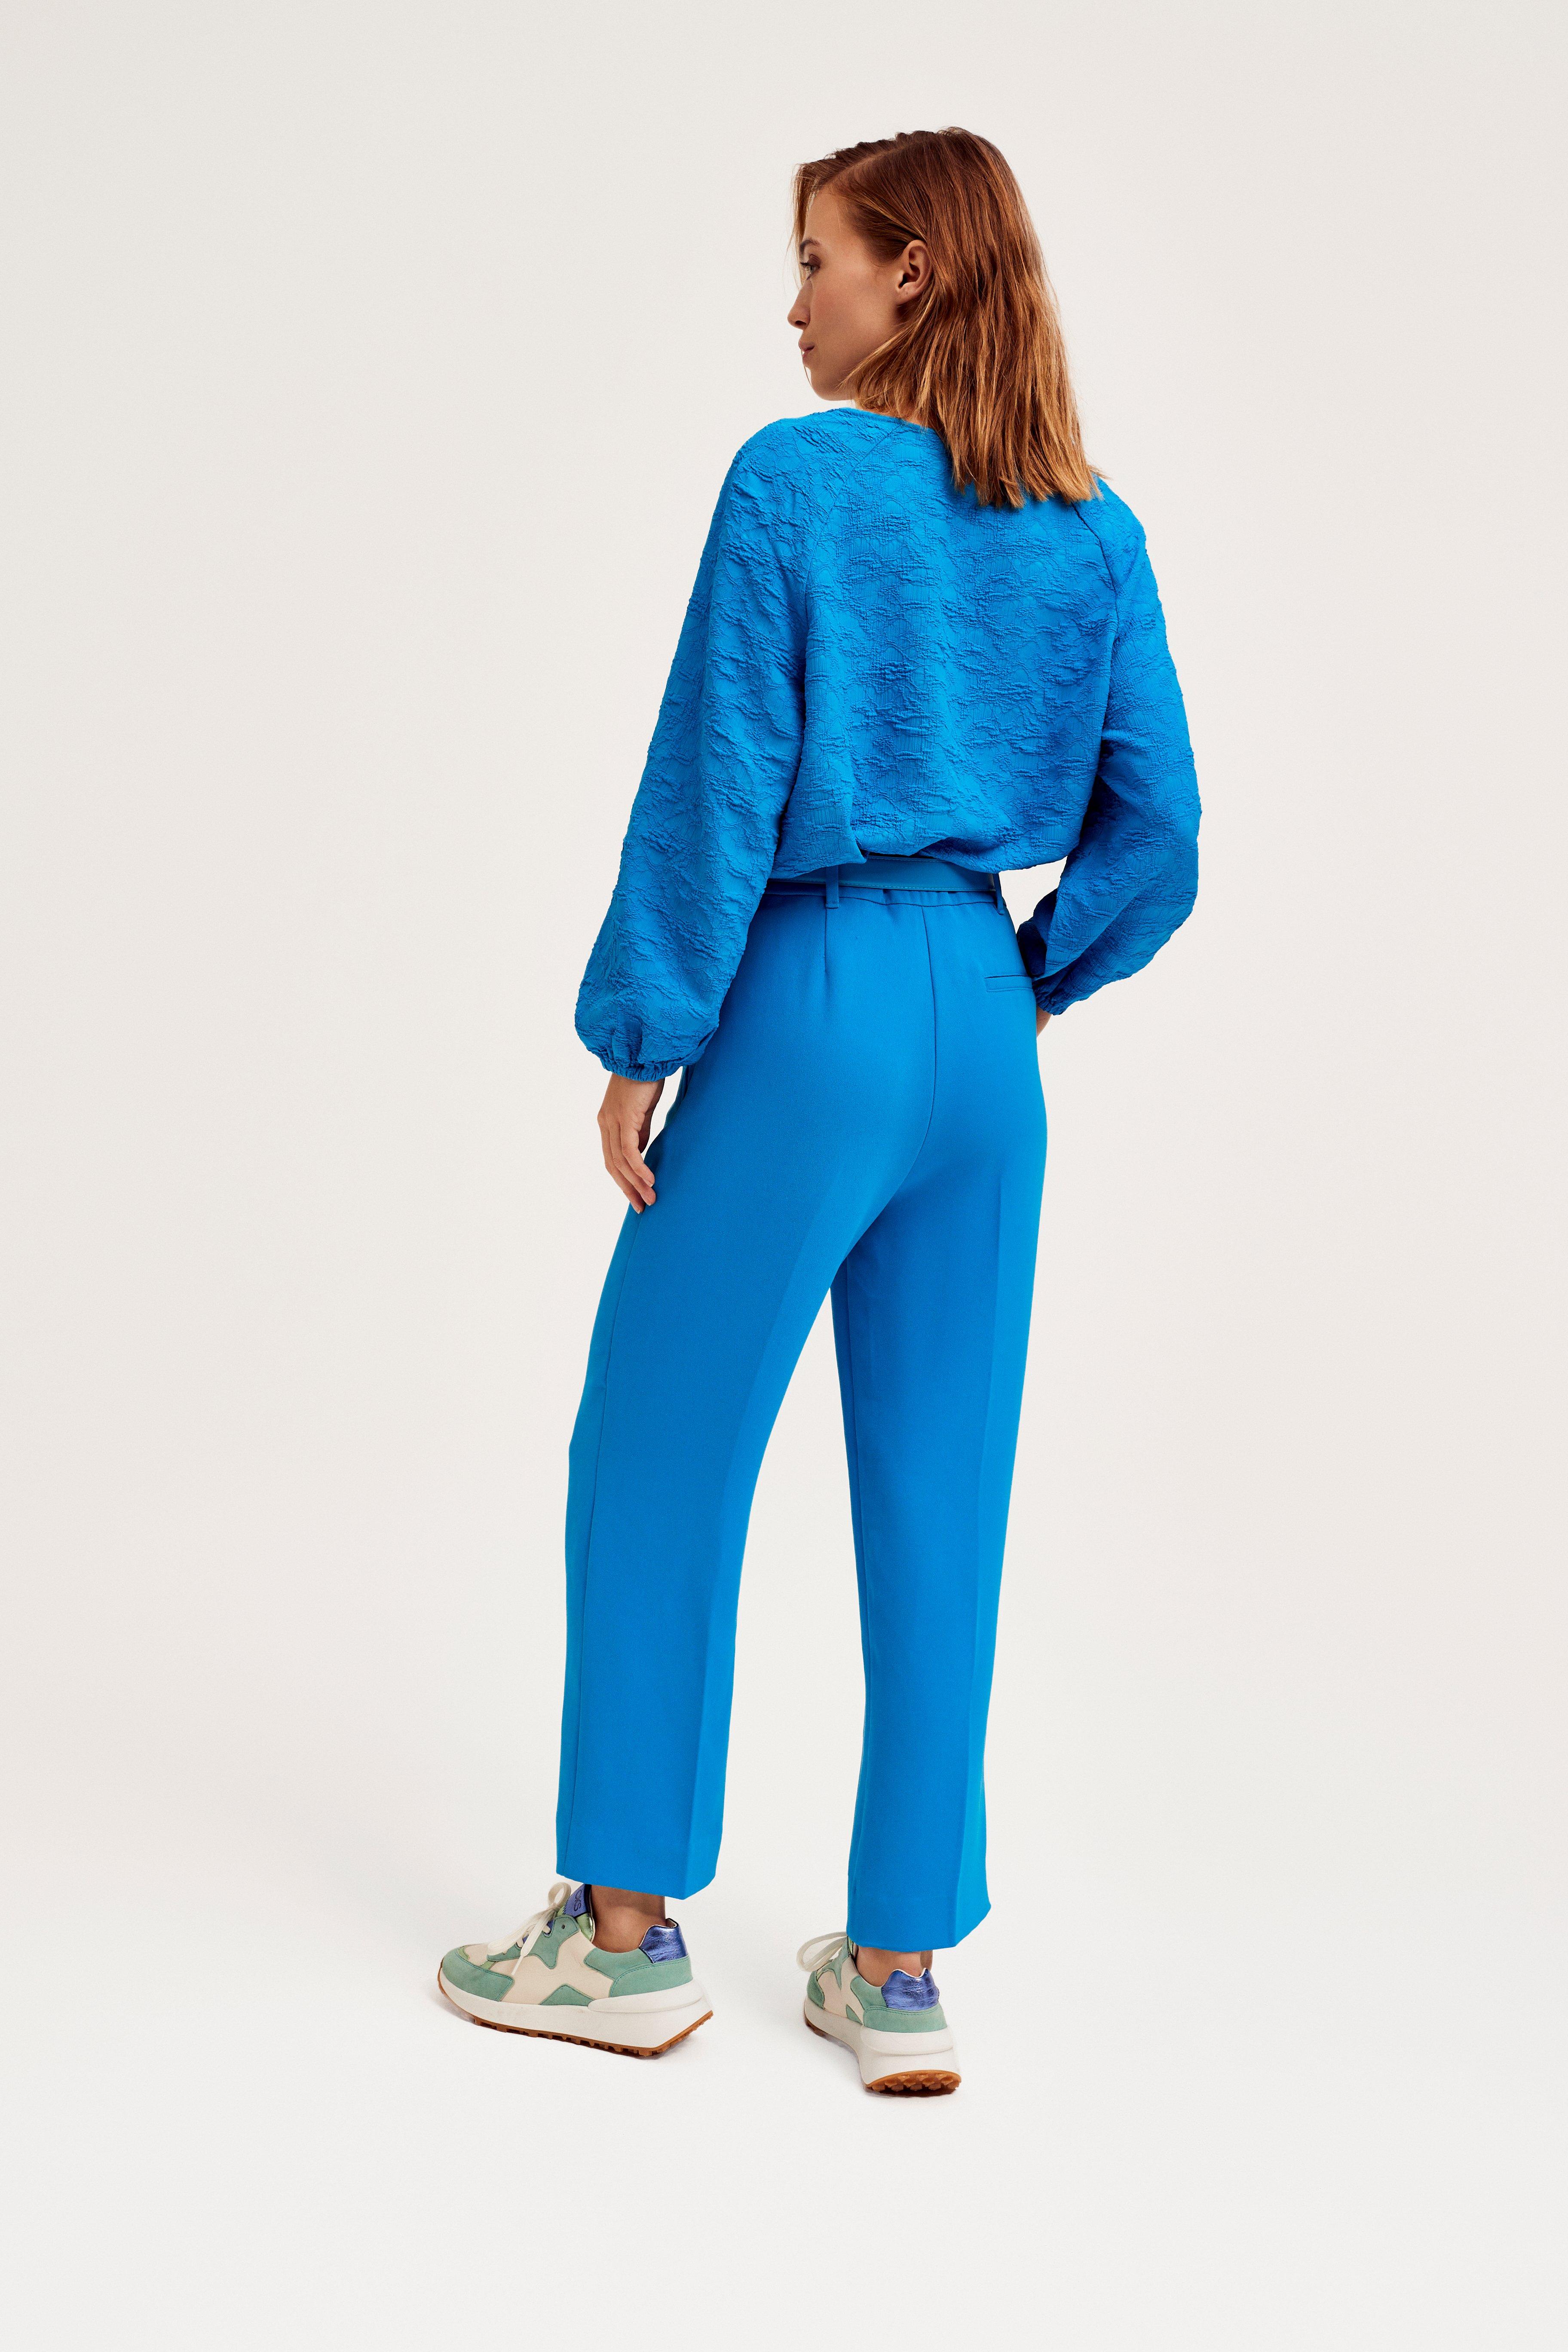 CKS Dames - SVEANA - blouse lange mouwen - intens blauw